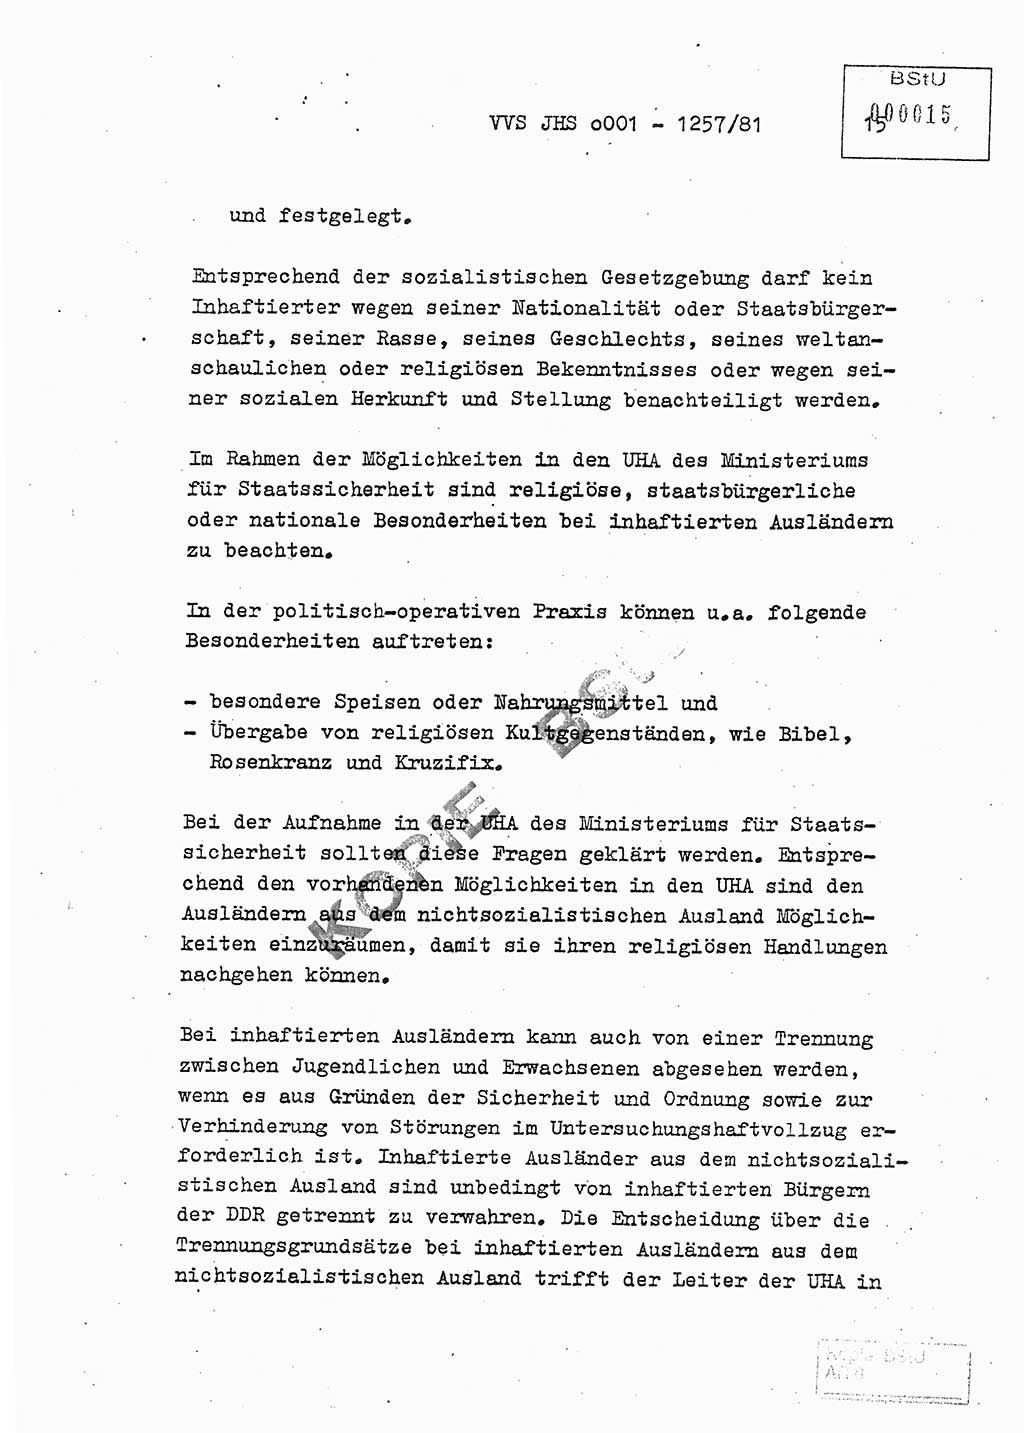 Fachschulabschlußarbeit Unterleutnant Dieter Möller (BV Rst. Abt. ⅩⅣ), Ministerium für Staatssicherheit (MfS) [Deutsche Demokratische Republik (DDR)], Juristische Hochschule (JHS), Vertrauliche Verschlußsache (VVS) o001-1257/81, Potsdam 1982, Seite 15 (FS-Abschl.-Arb. MfS DDR JHS VVS o001-1257/81 1982, S. 15)